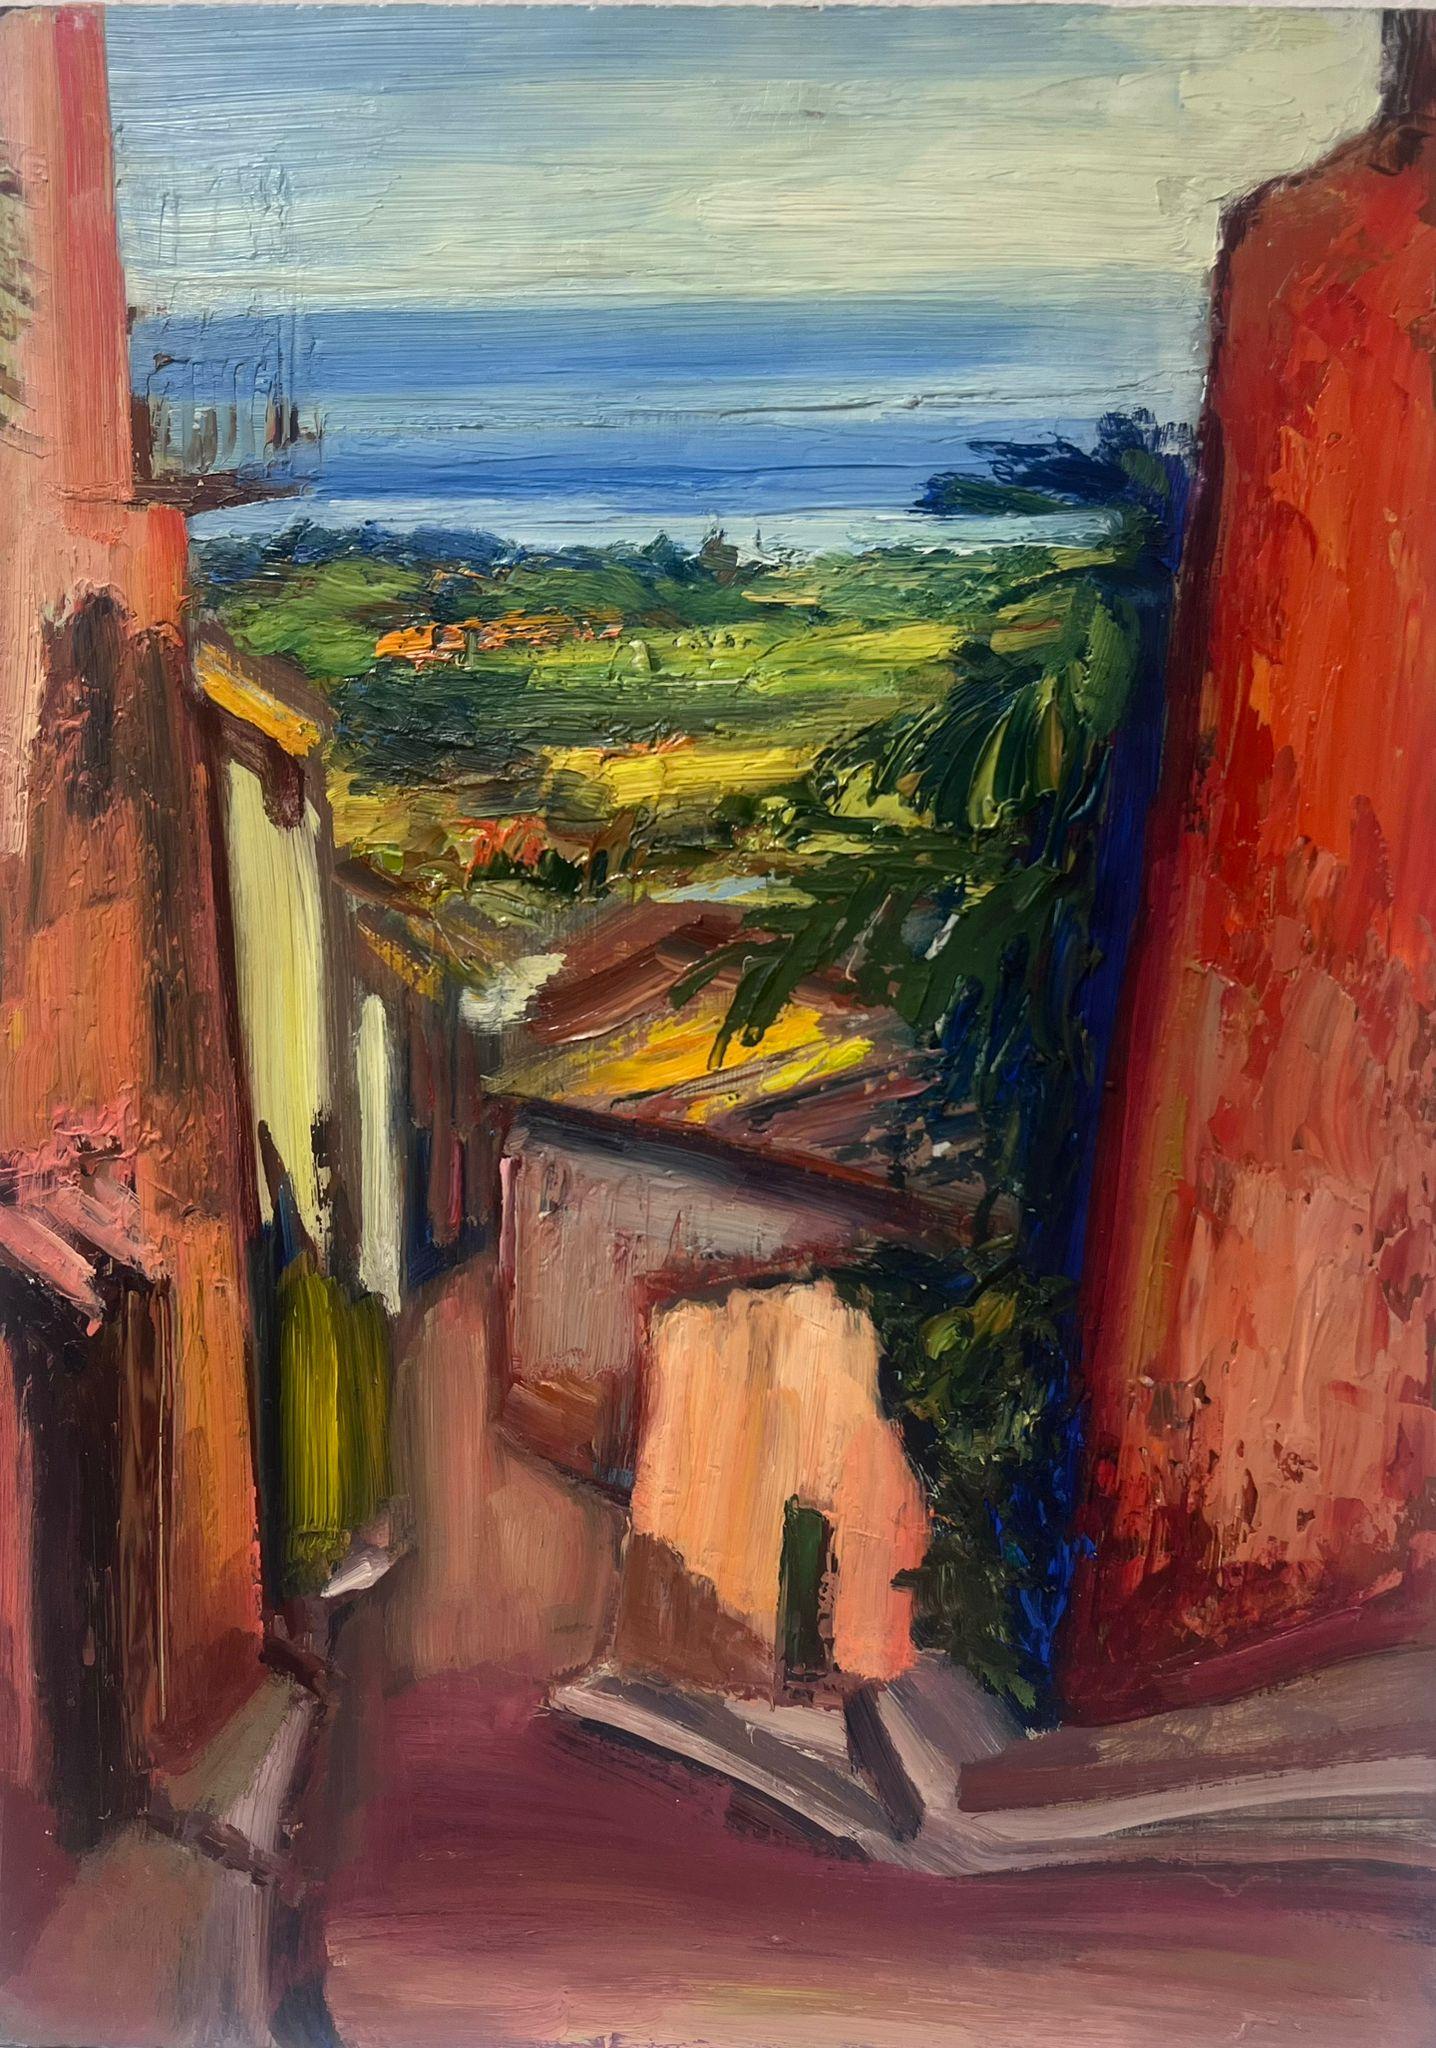 Landscape Painting Josine Vignon - Peinture à l'huile post-impressionniste française des années 1940 - Vue de rue d'un village méditerranéen